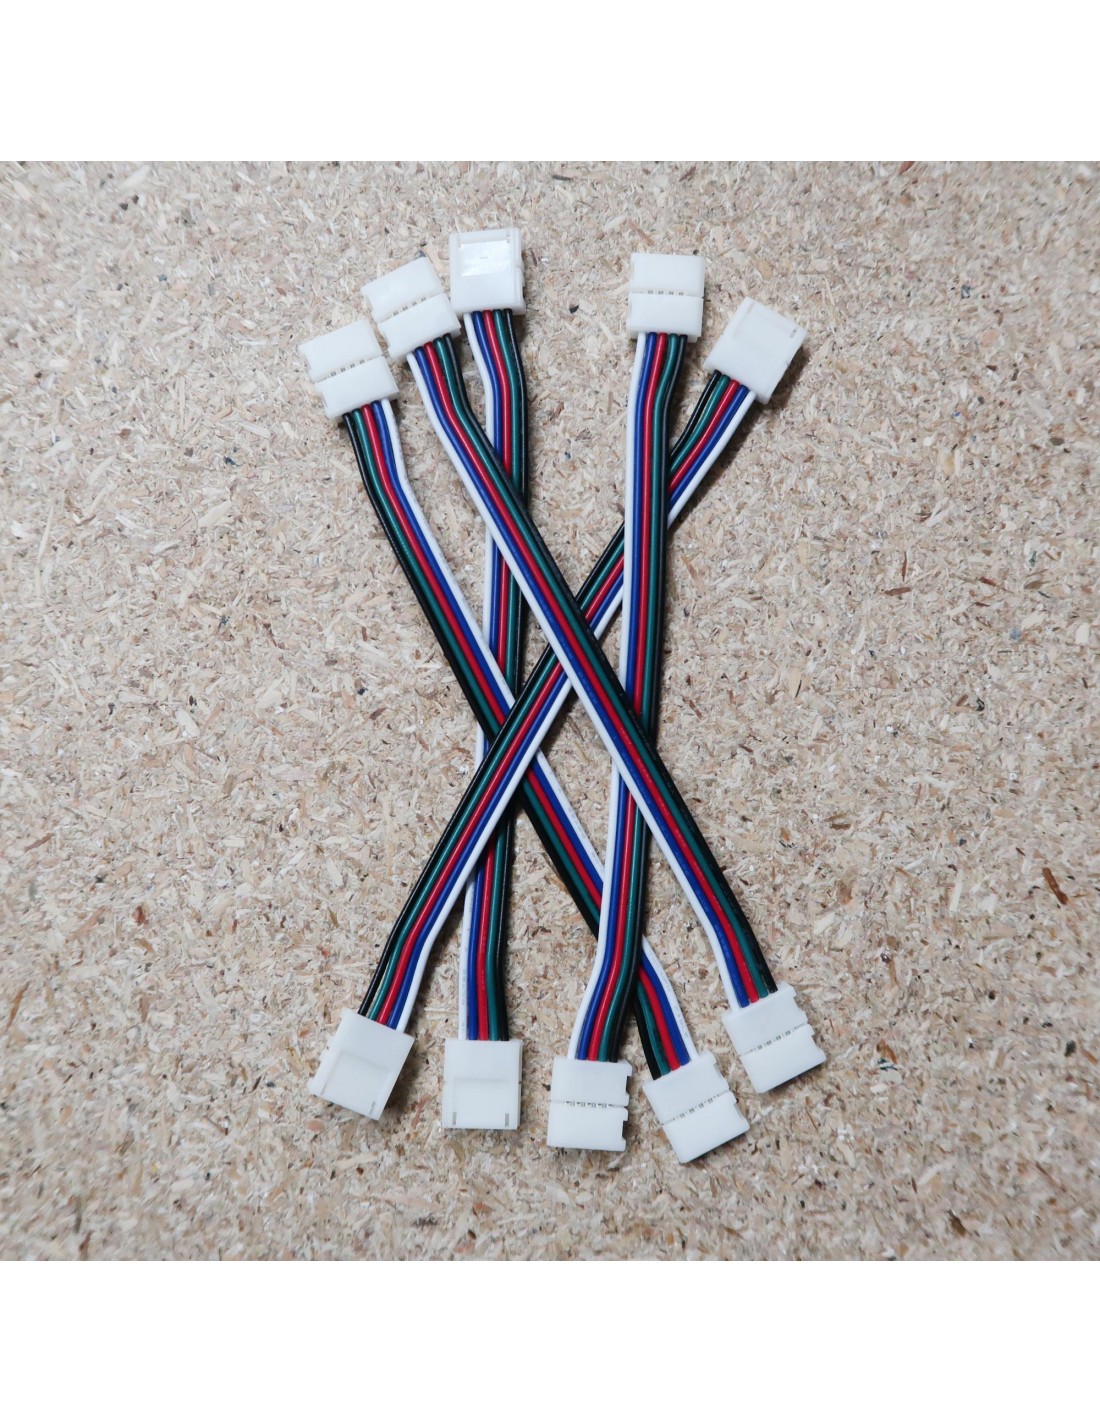 Zubehör für LED-Streifen RGBW 5 Pin Verbinder Kabel Verlängerungen